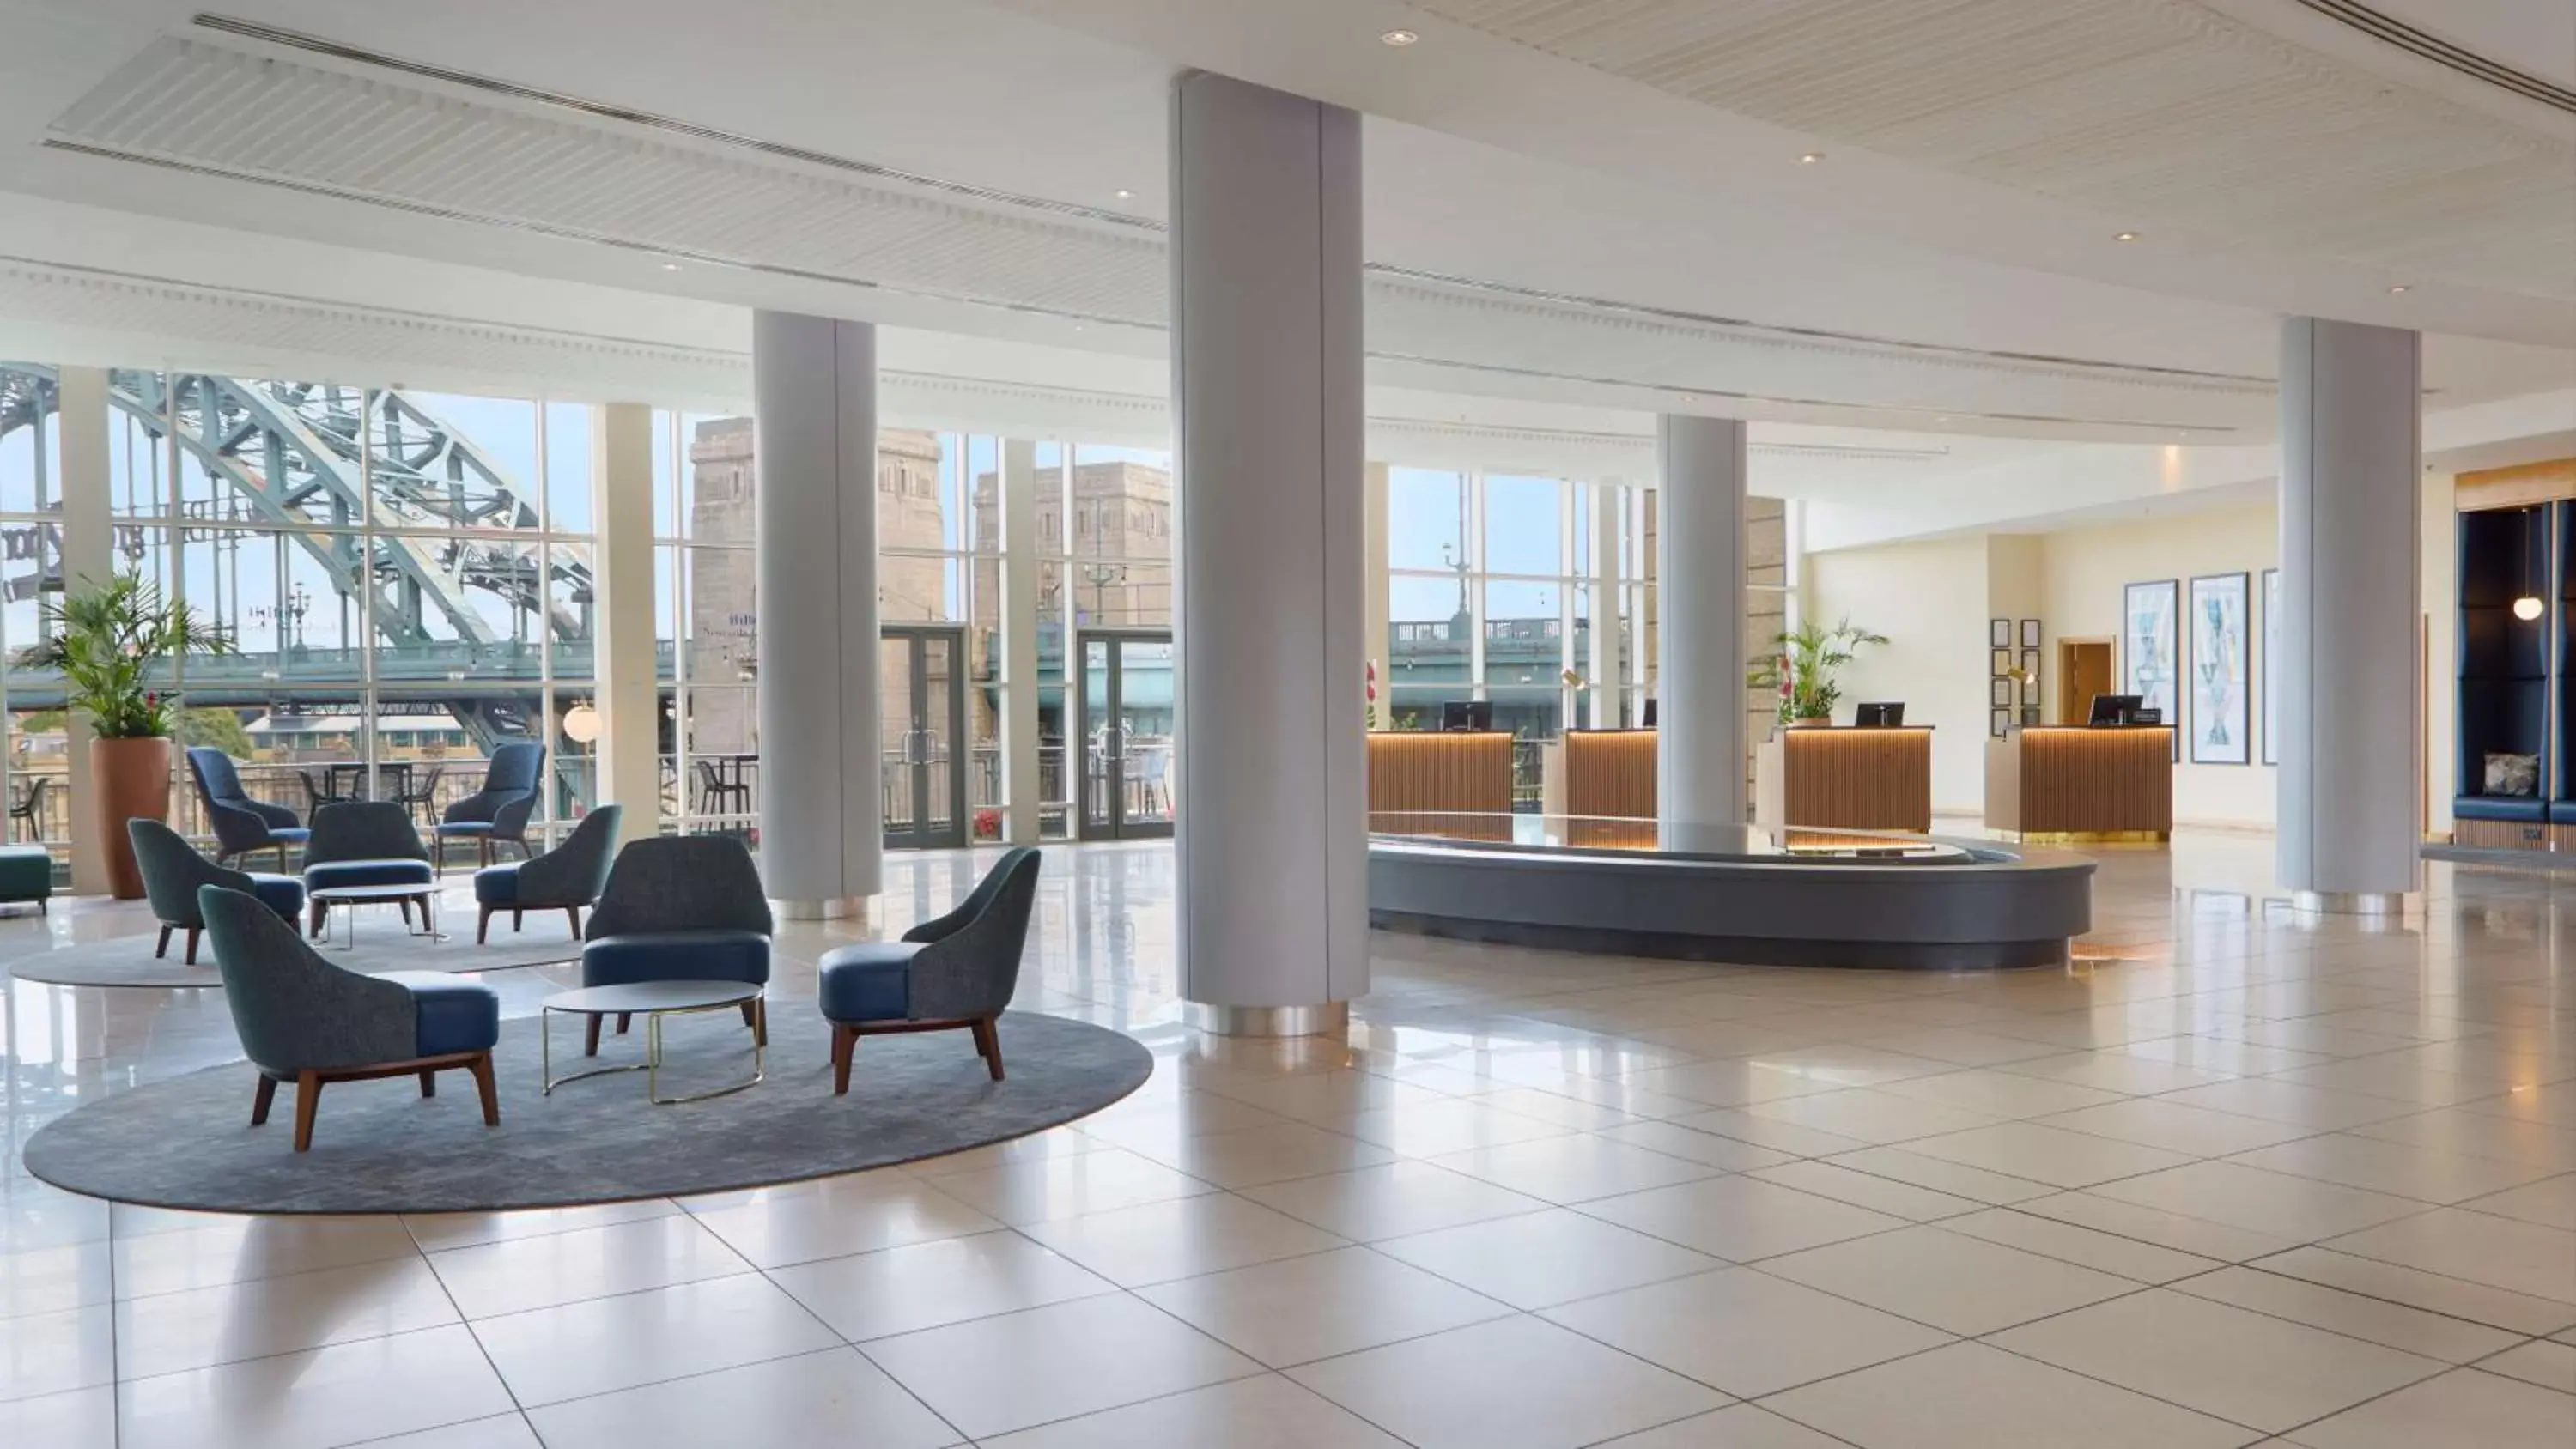 Lobby or reception, Lobby/Reception in Hilton Newcastle Gateshead